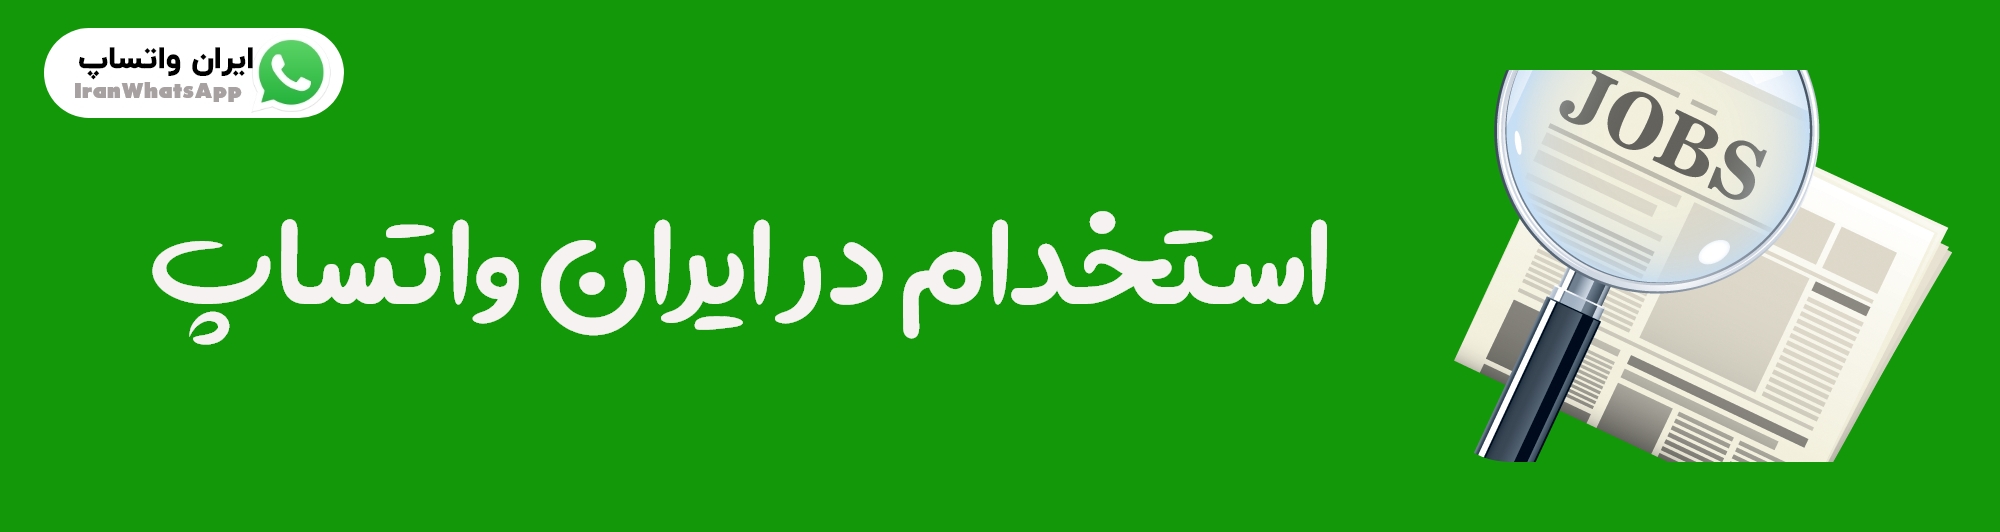 استخدام در ایران واتساپ